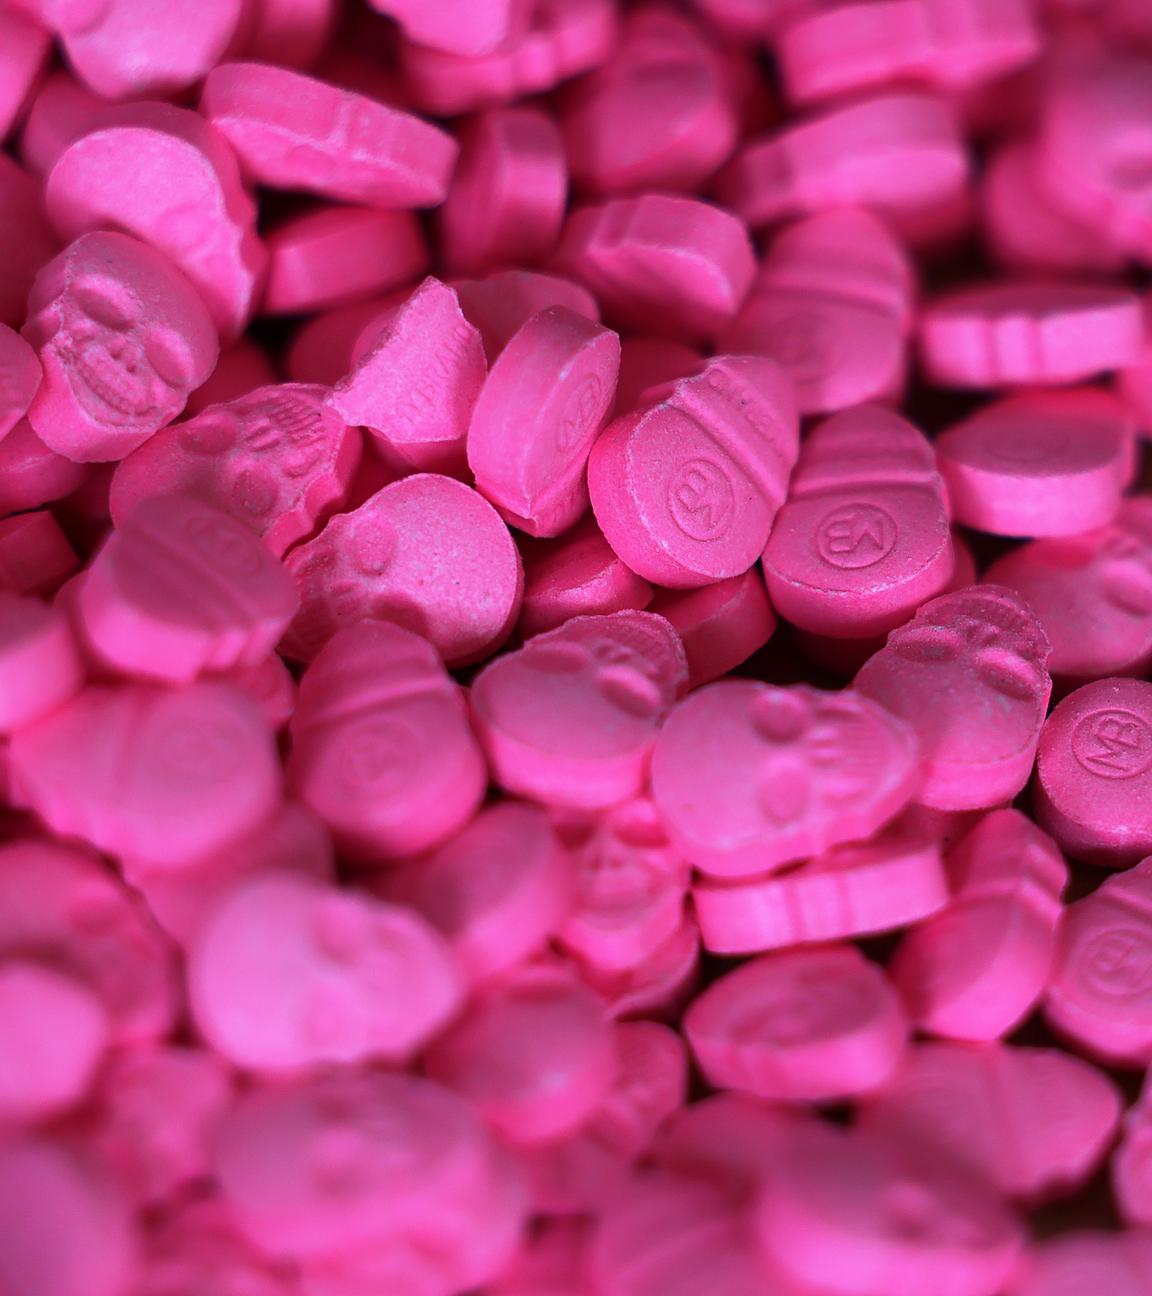 Ecstasy-Tabletten in Form von Totenköpfen